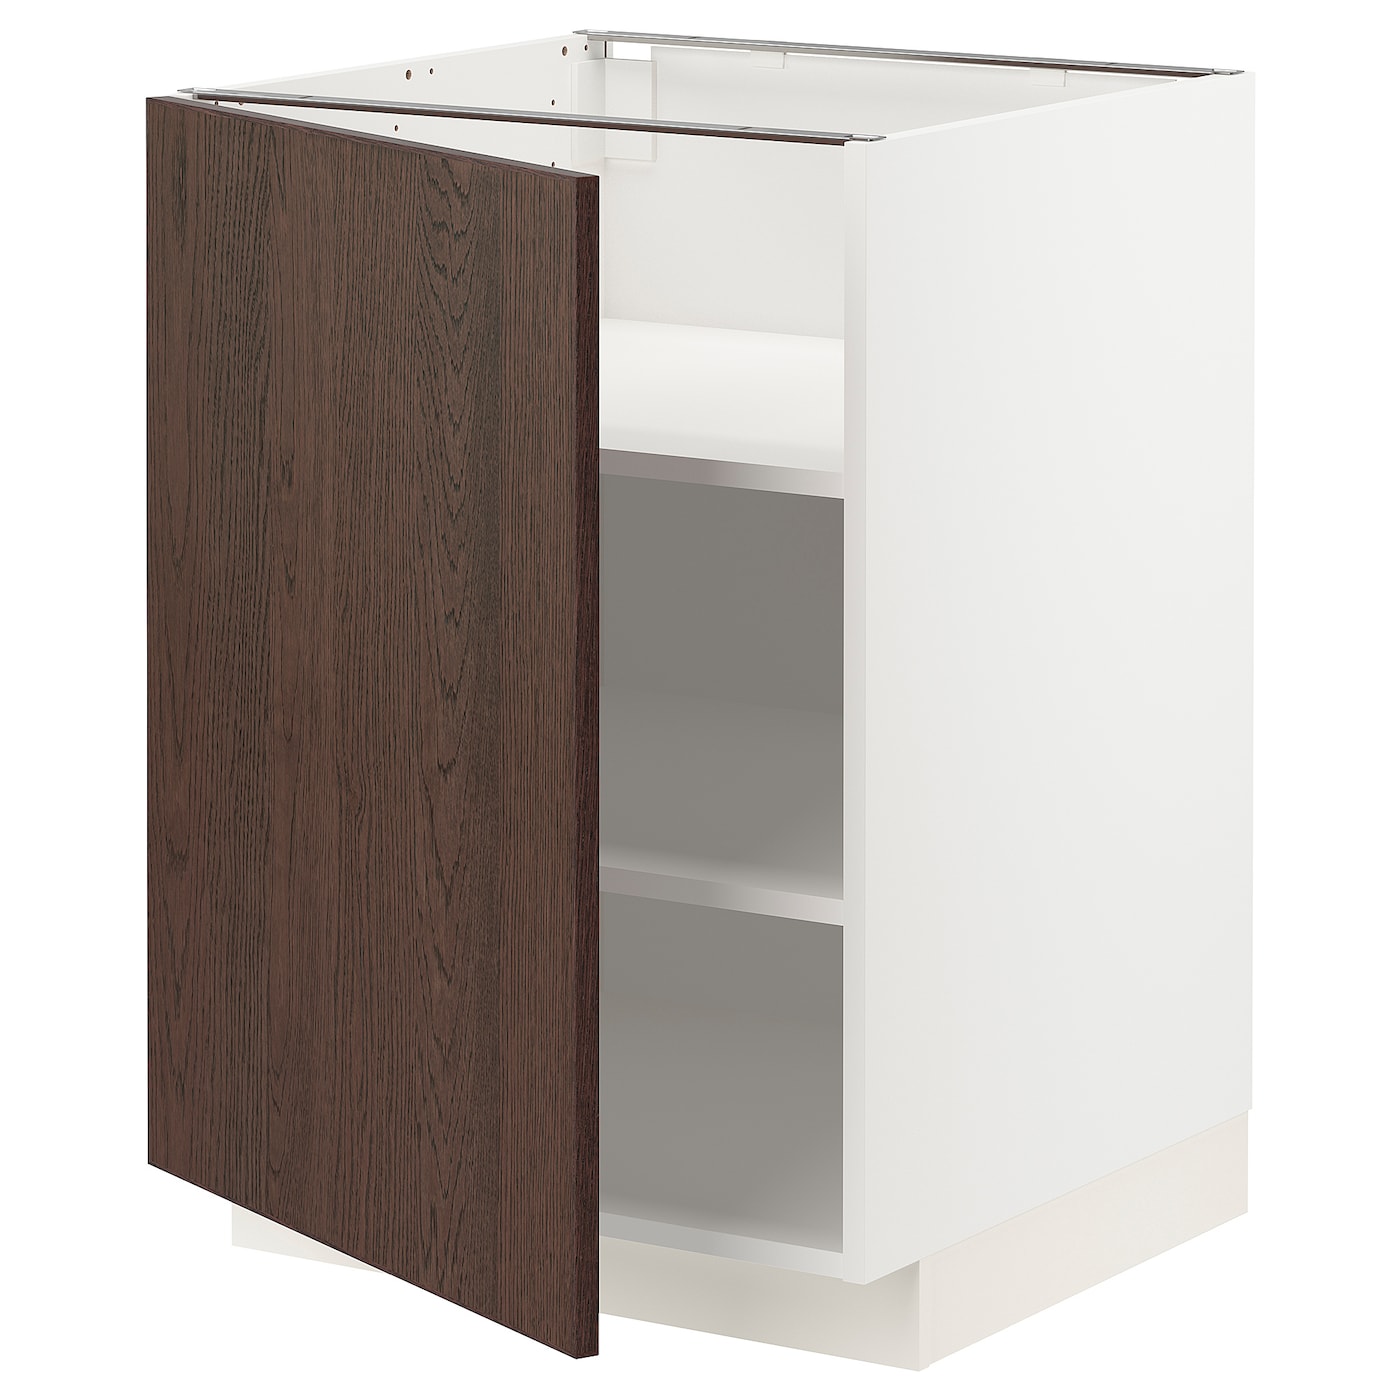 Напольный шкаф  - IKEA METOD, 88x62x60см, белый/коричневый, МЕТОД ИКЕА